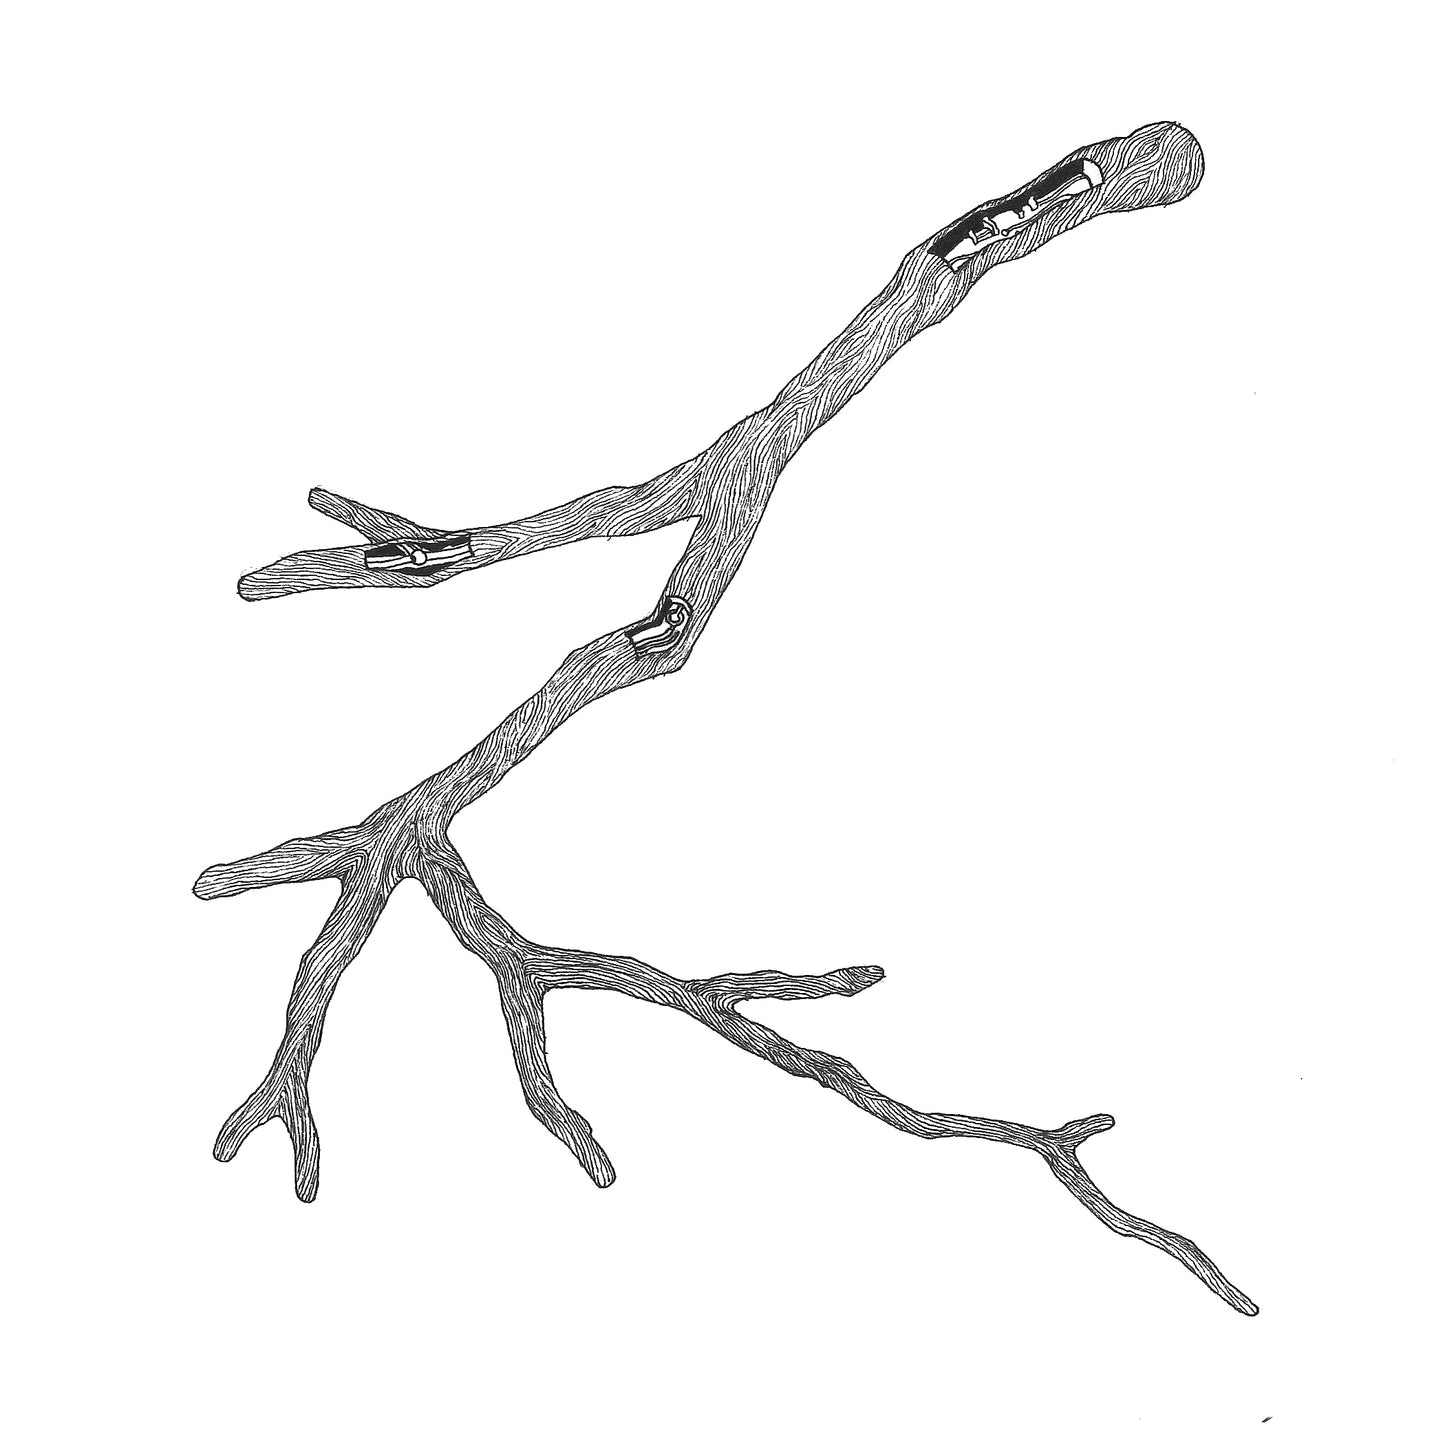 A Twig